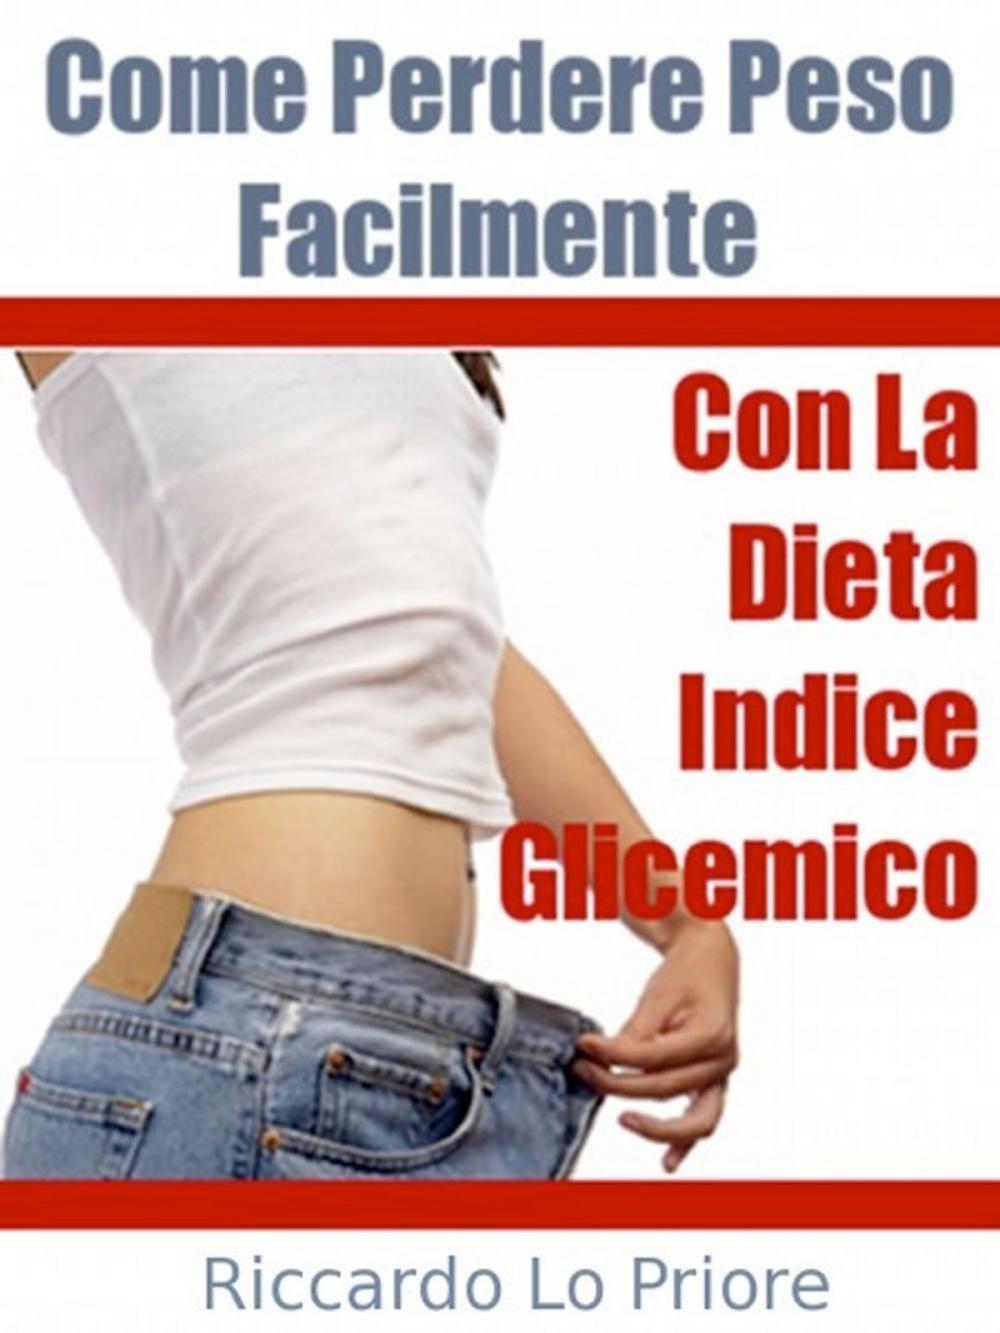 Big bigCover of La Dieta Indice Glicemico